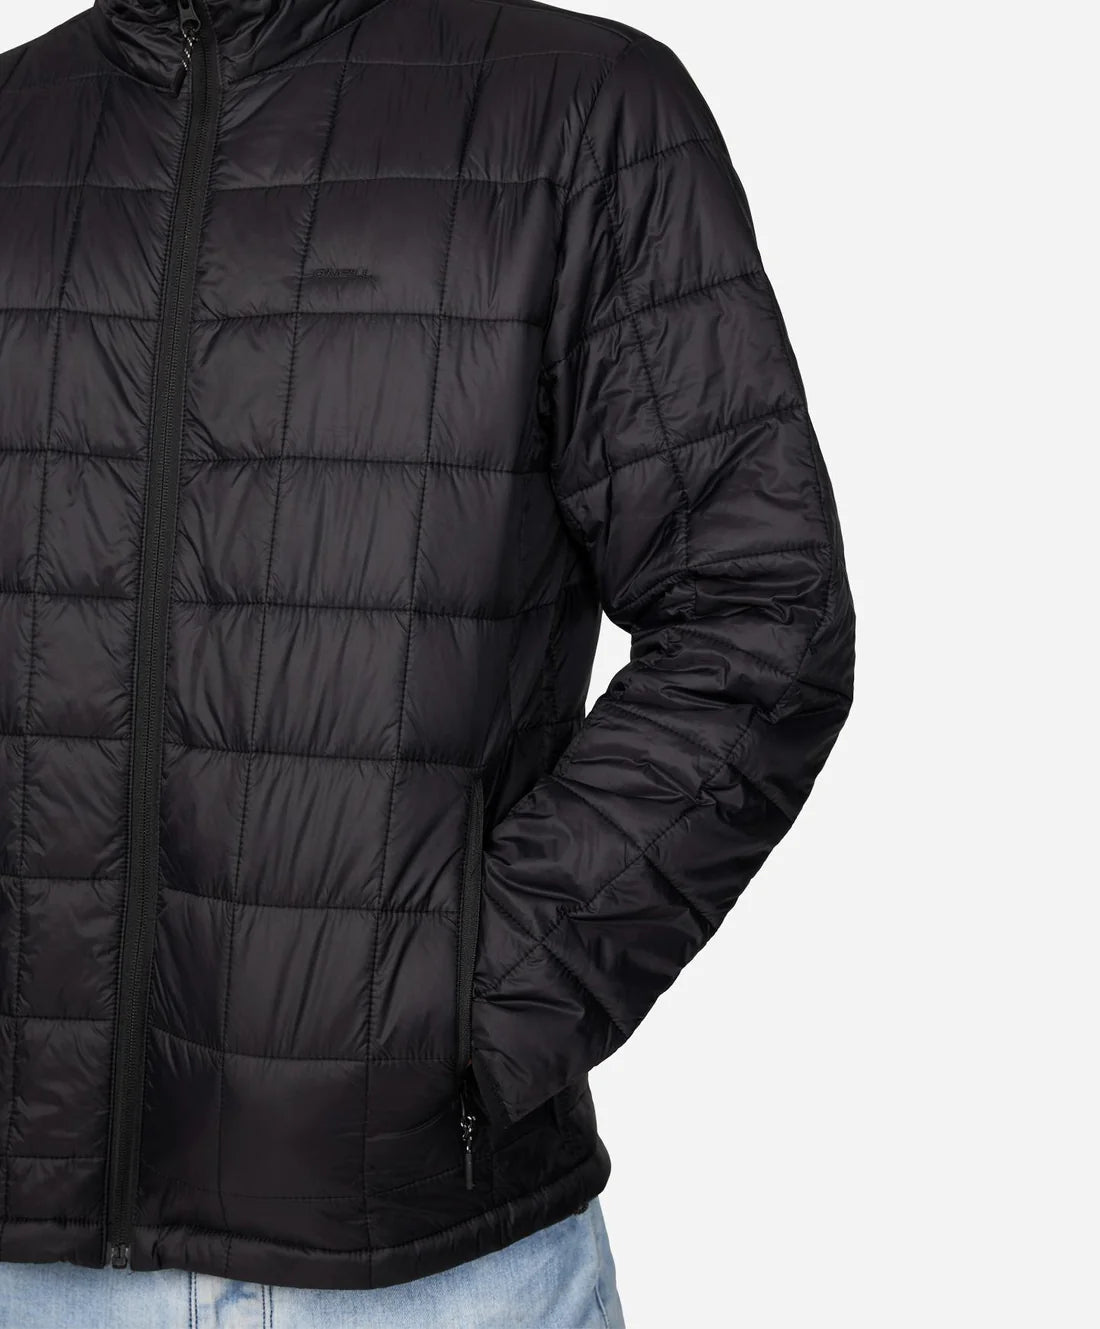 O'NEILL - TRVLR Away Packable Jacket - Black